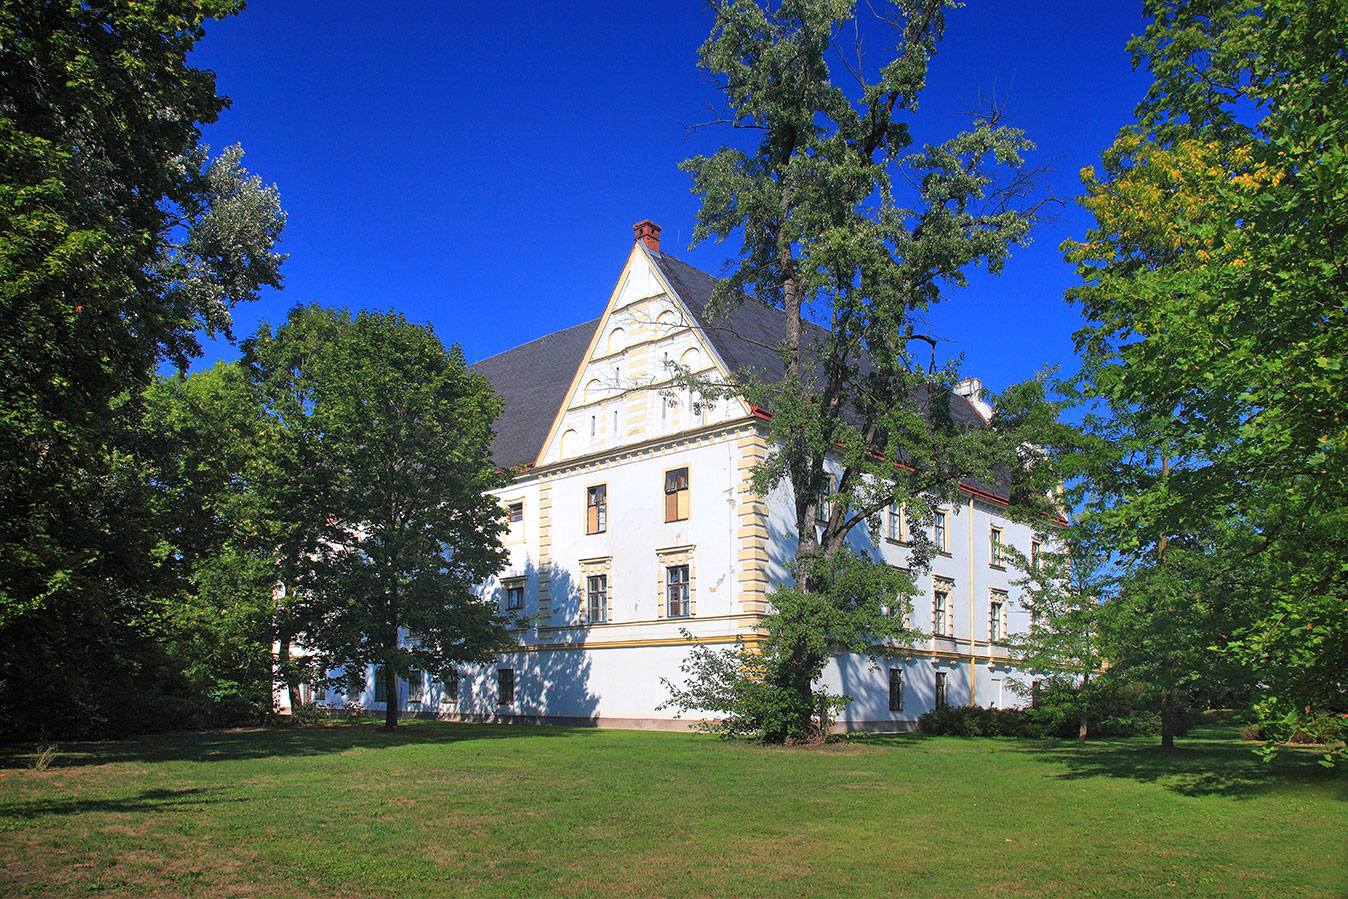 The Bartošovice chateau park